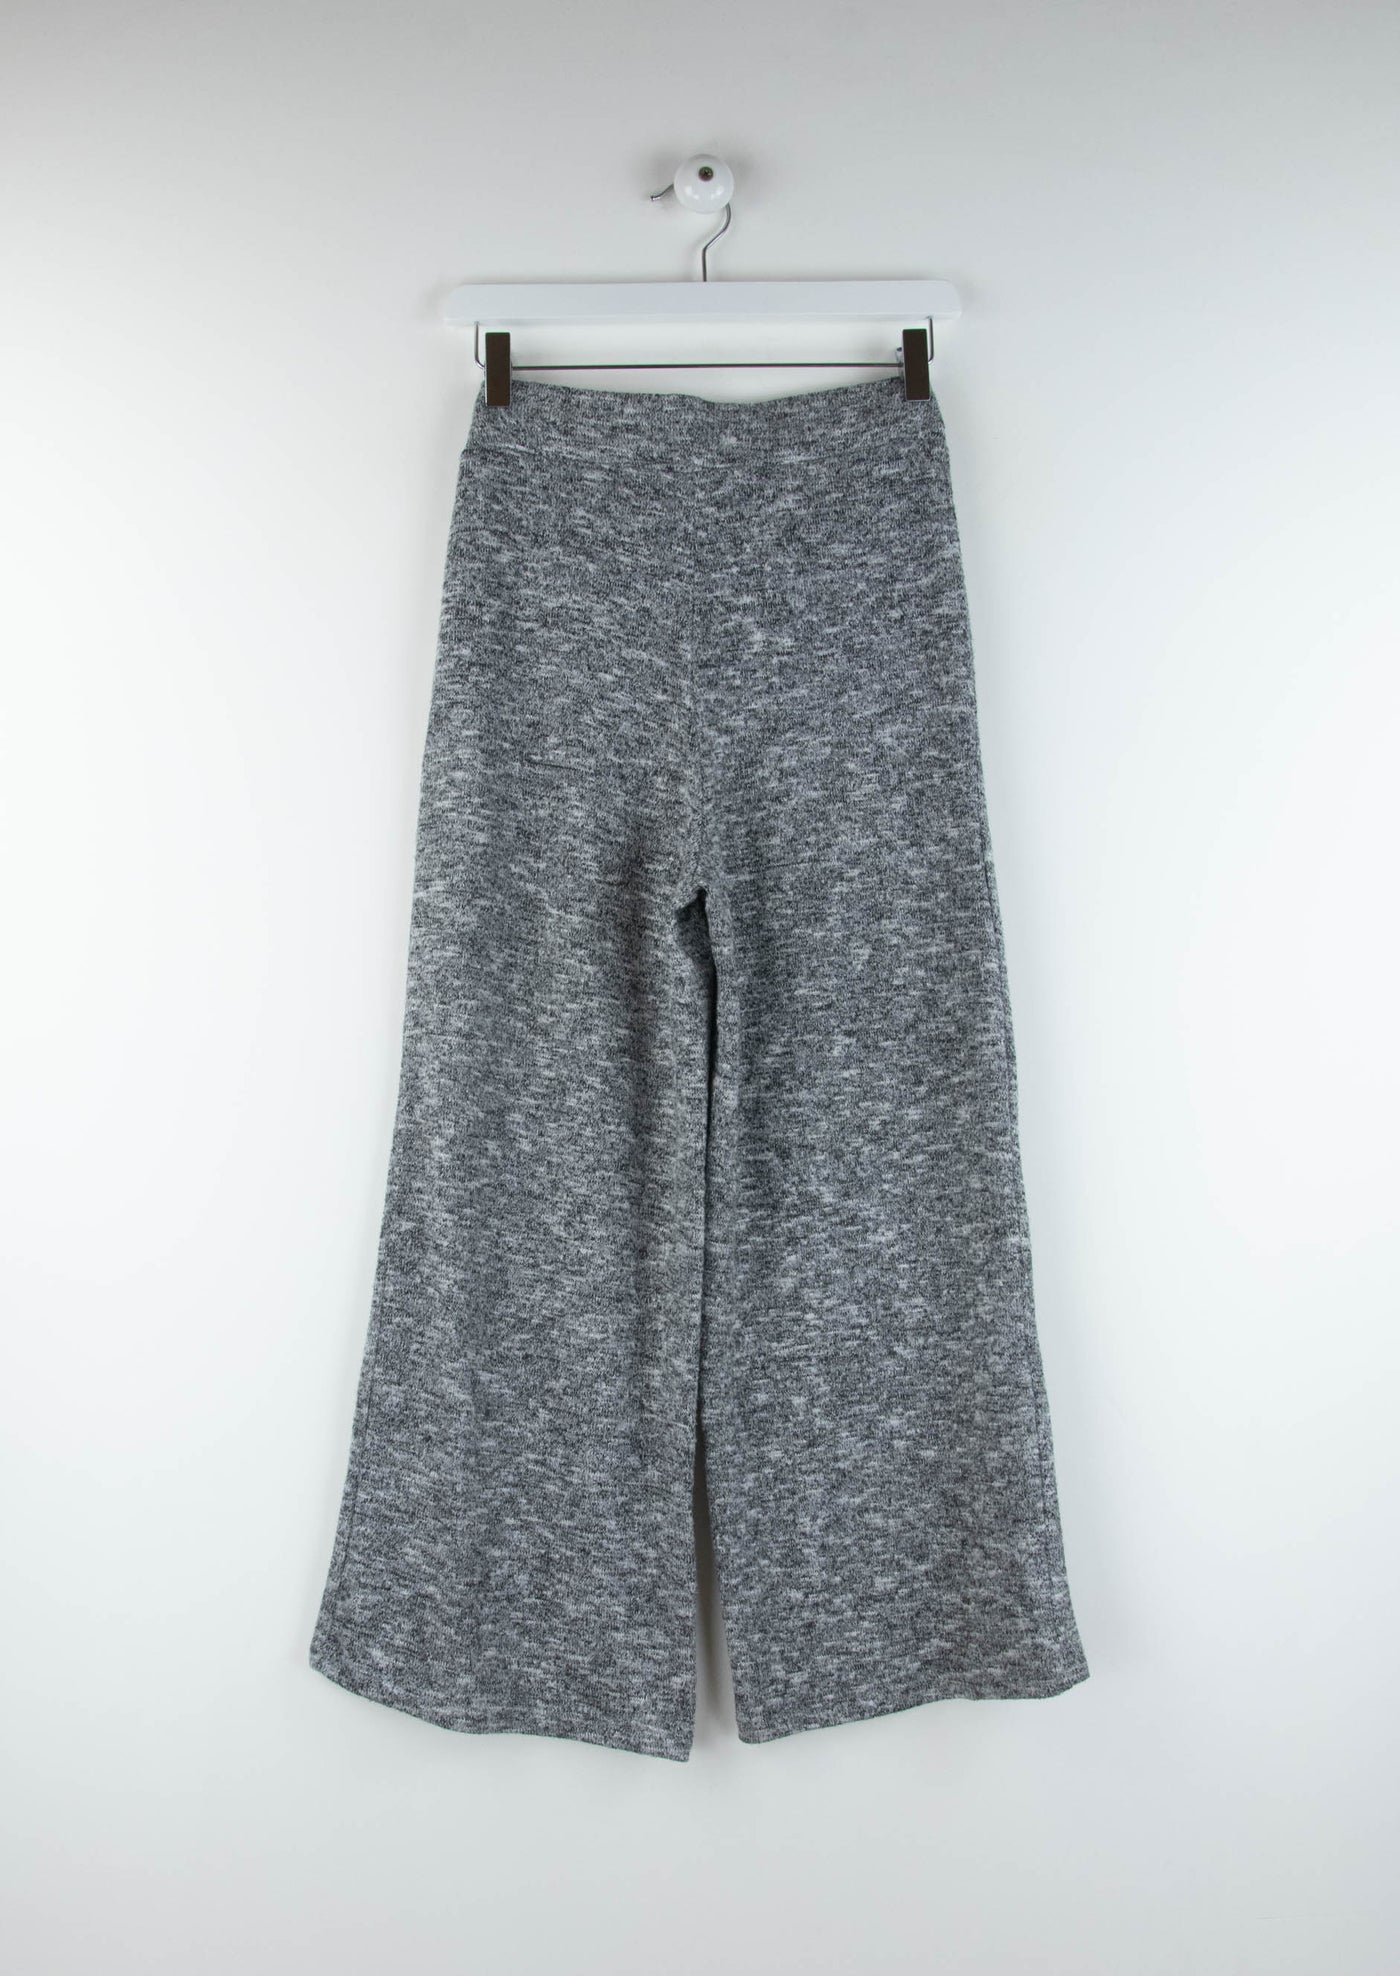 Pantalón de punto fluido gris con detalles negros y blanco